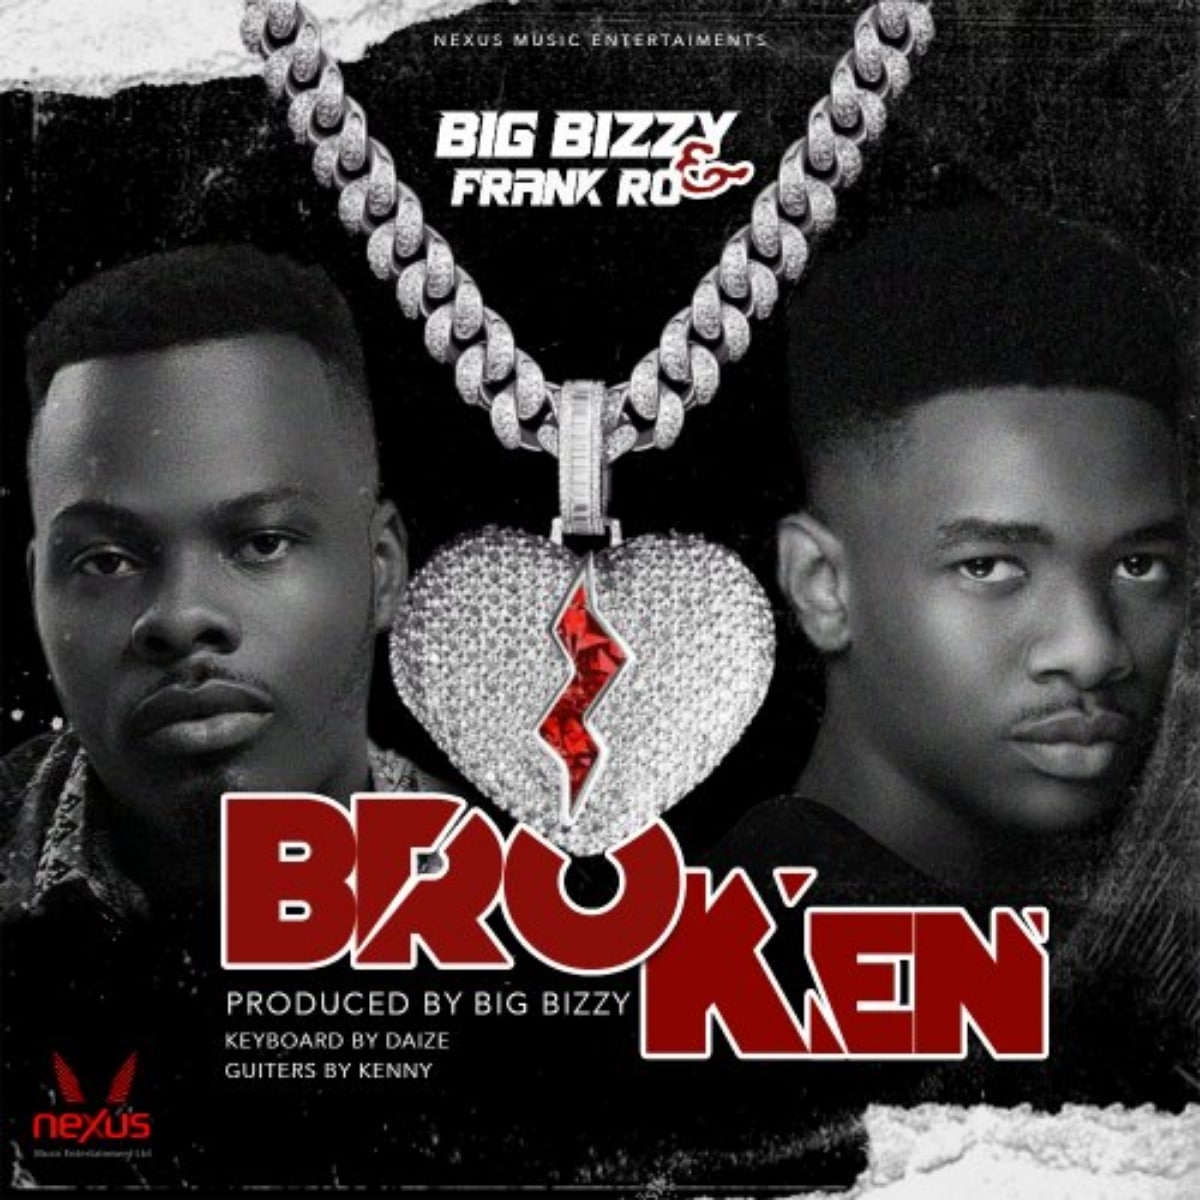 DOWNLOAD: Big Bizzy Ft. Frank Ro – “Broken” Mp3